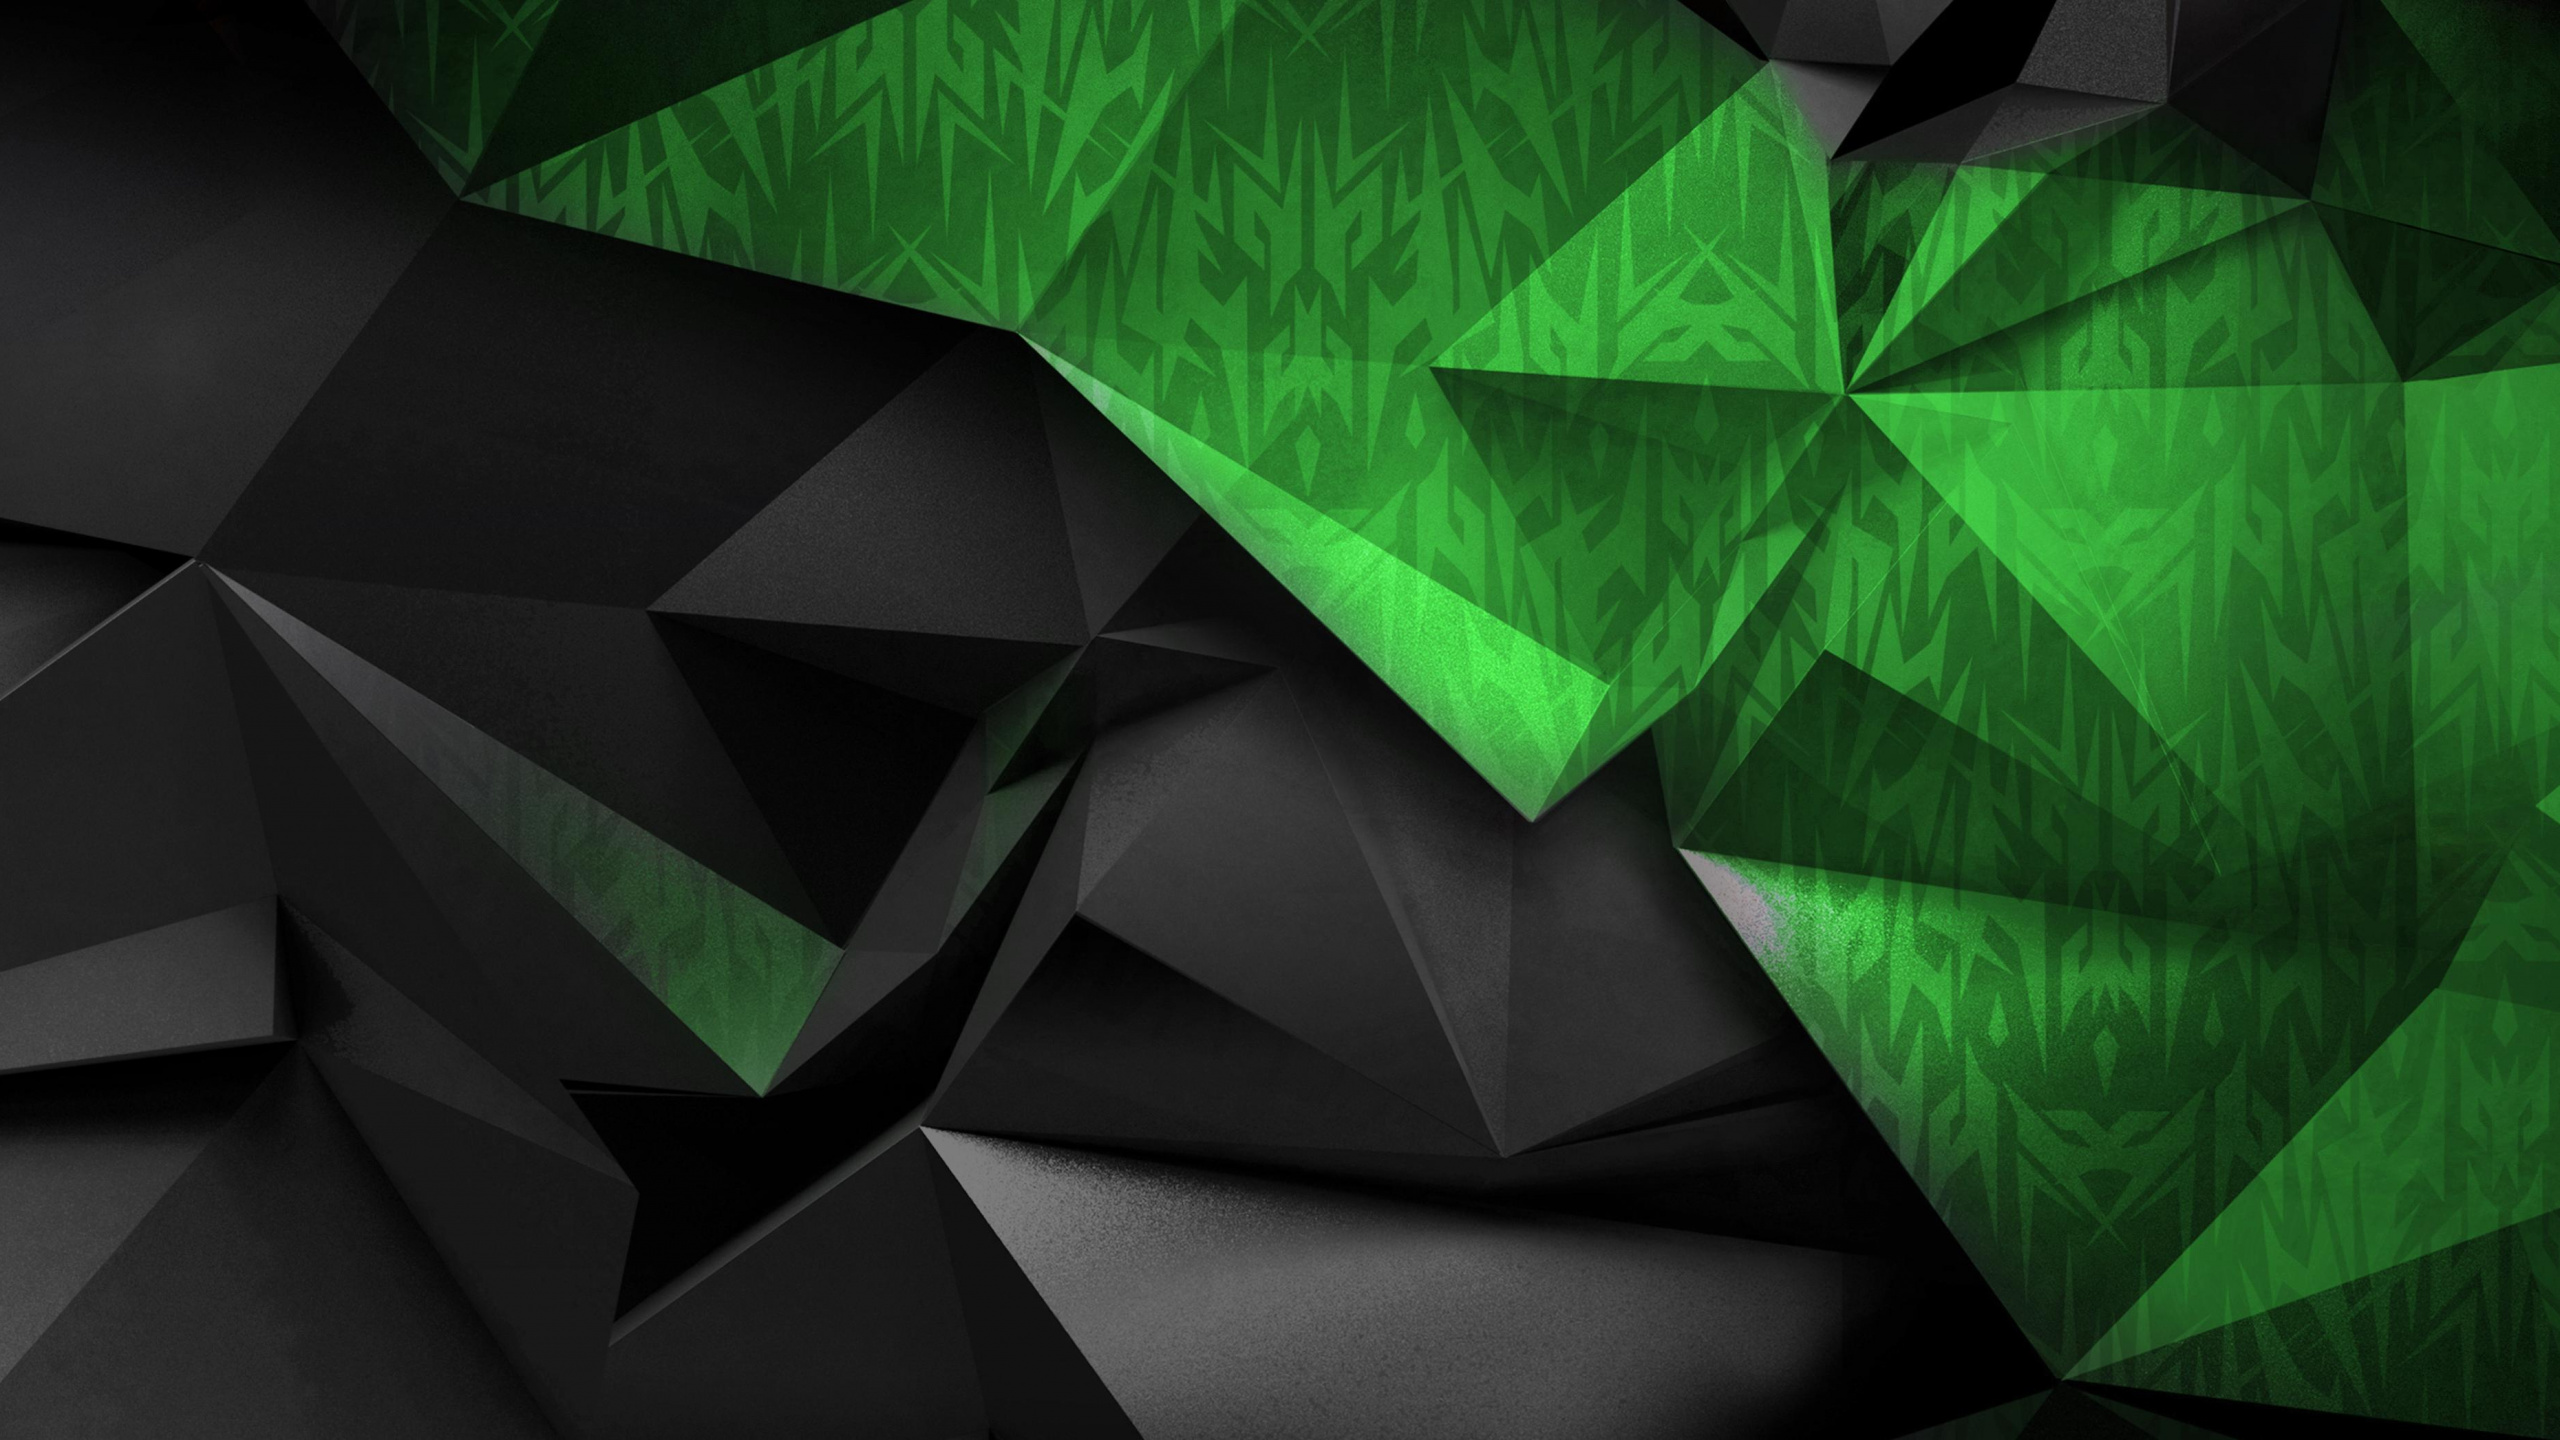 宏碁, 绿色的, 宏碁渴望, 三角形, 戴尔 壁纸 2560x1440 允许